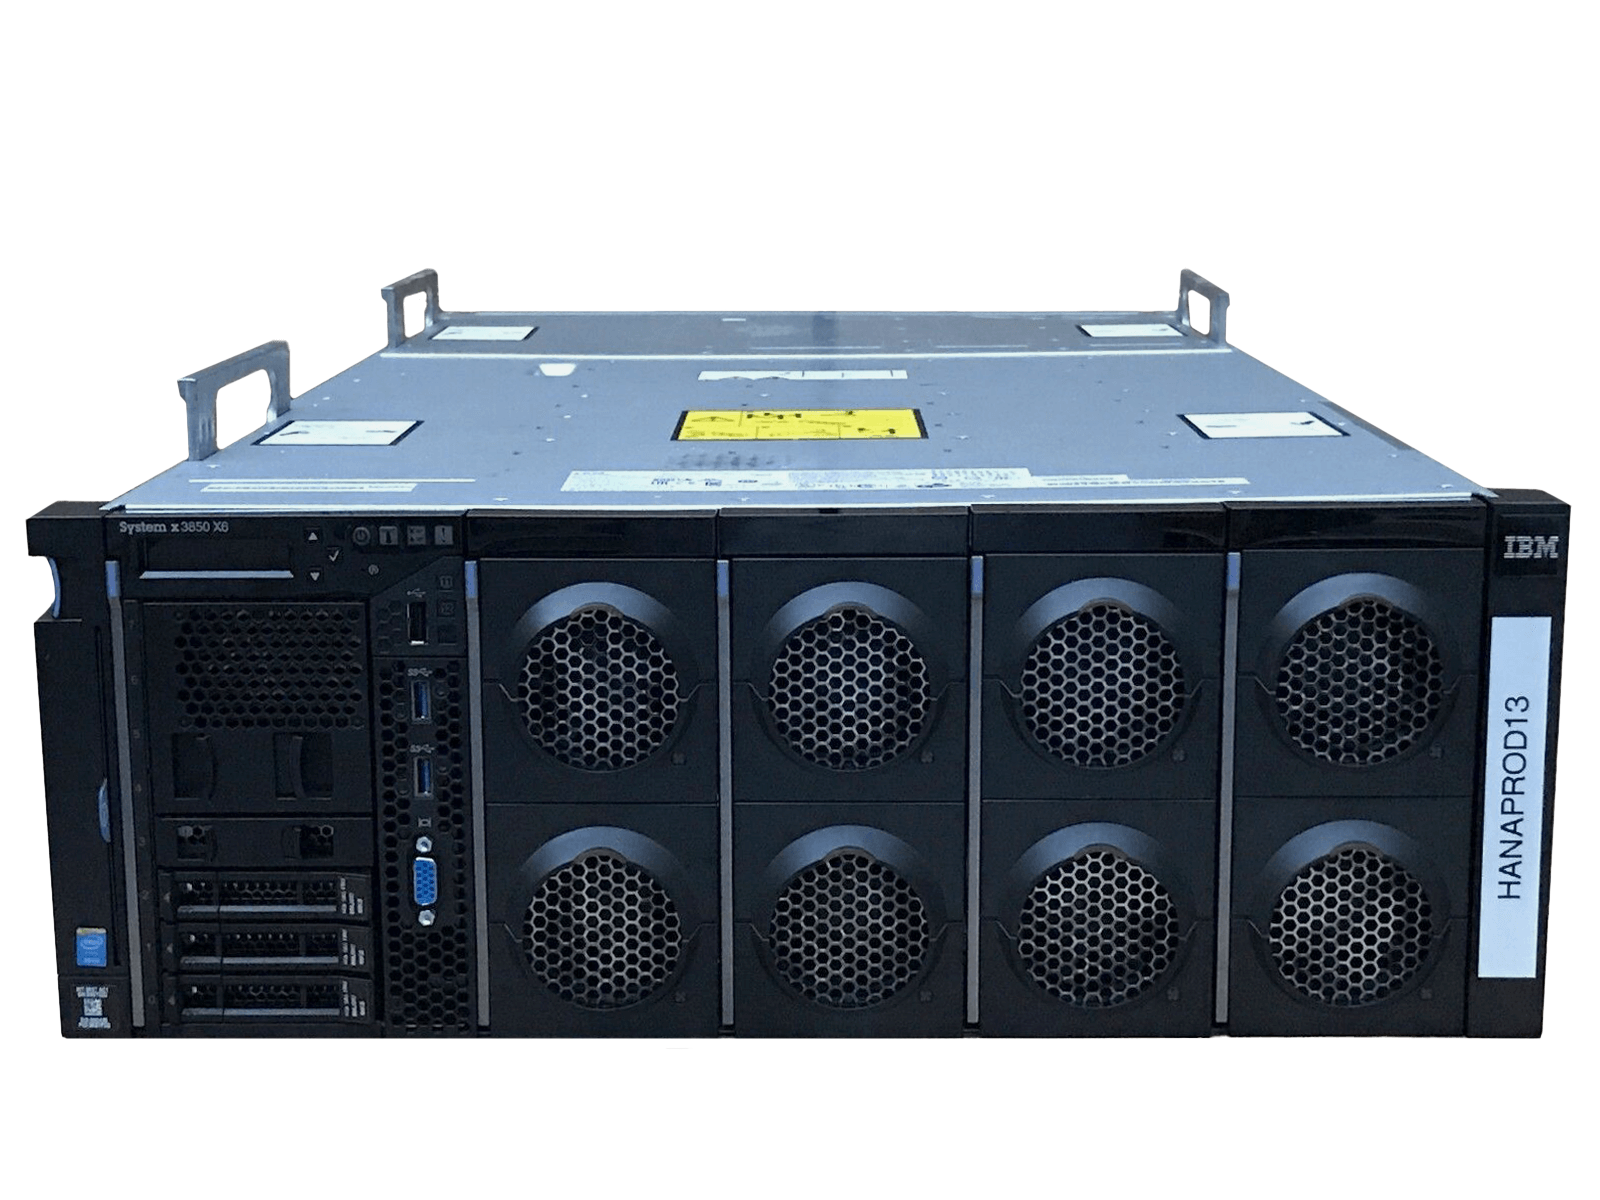 IBM x3850 X6 Server 4x Xeon E7-8880 v2 2048GB DDR3 RAM 3x 300GB 10K 4x 1400W PSU